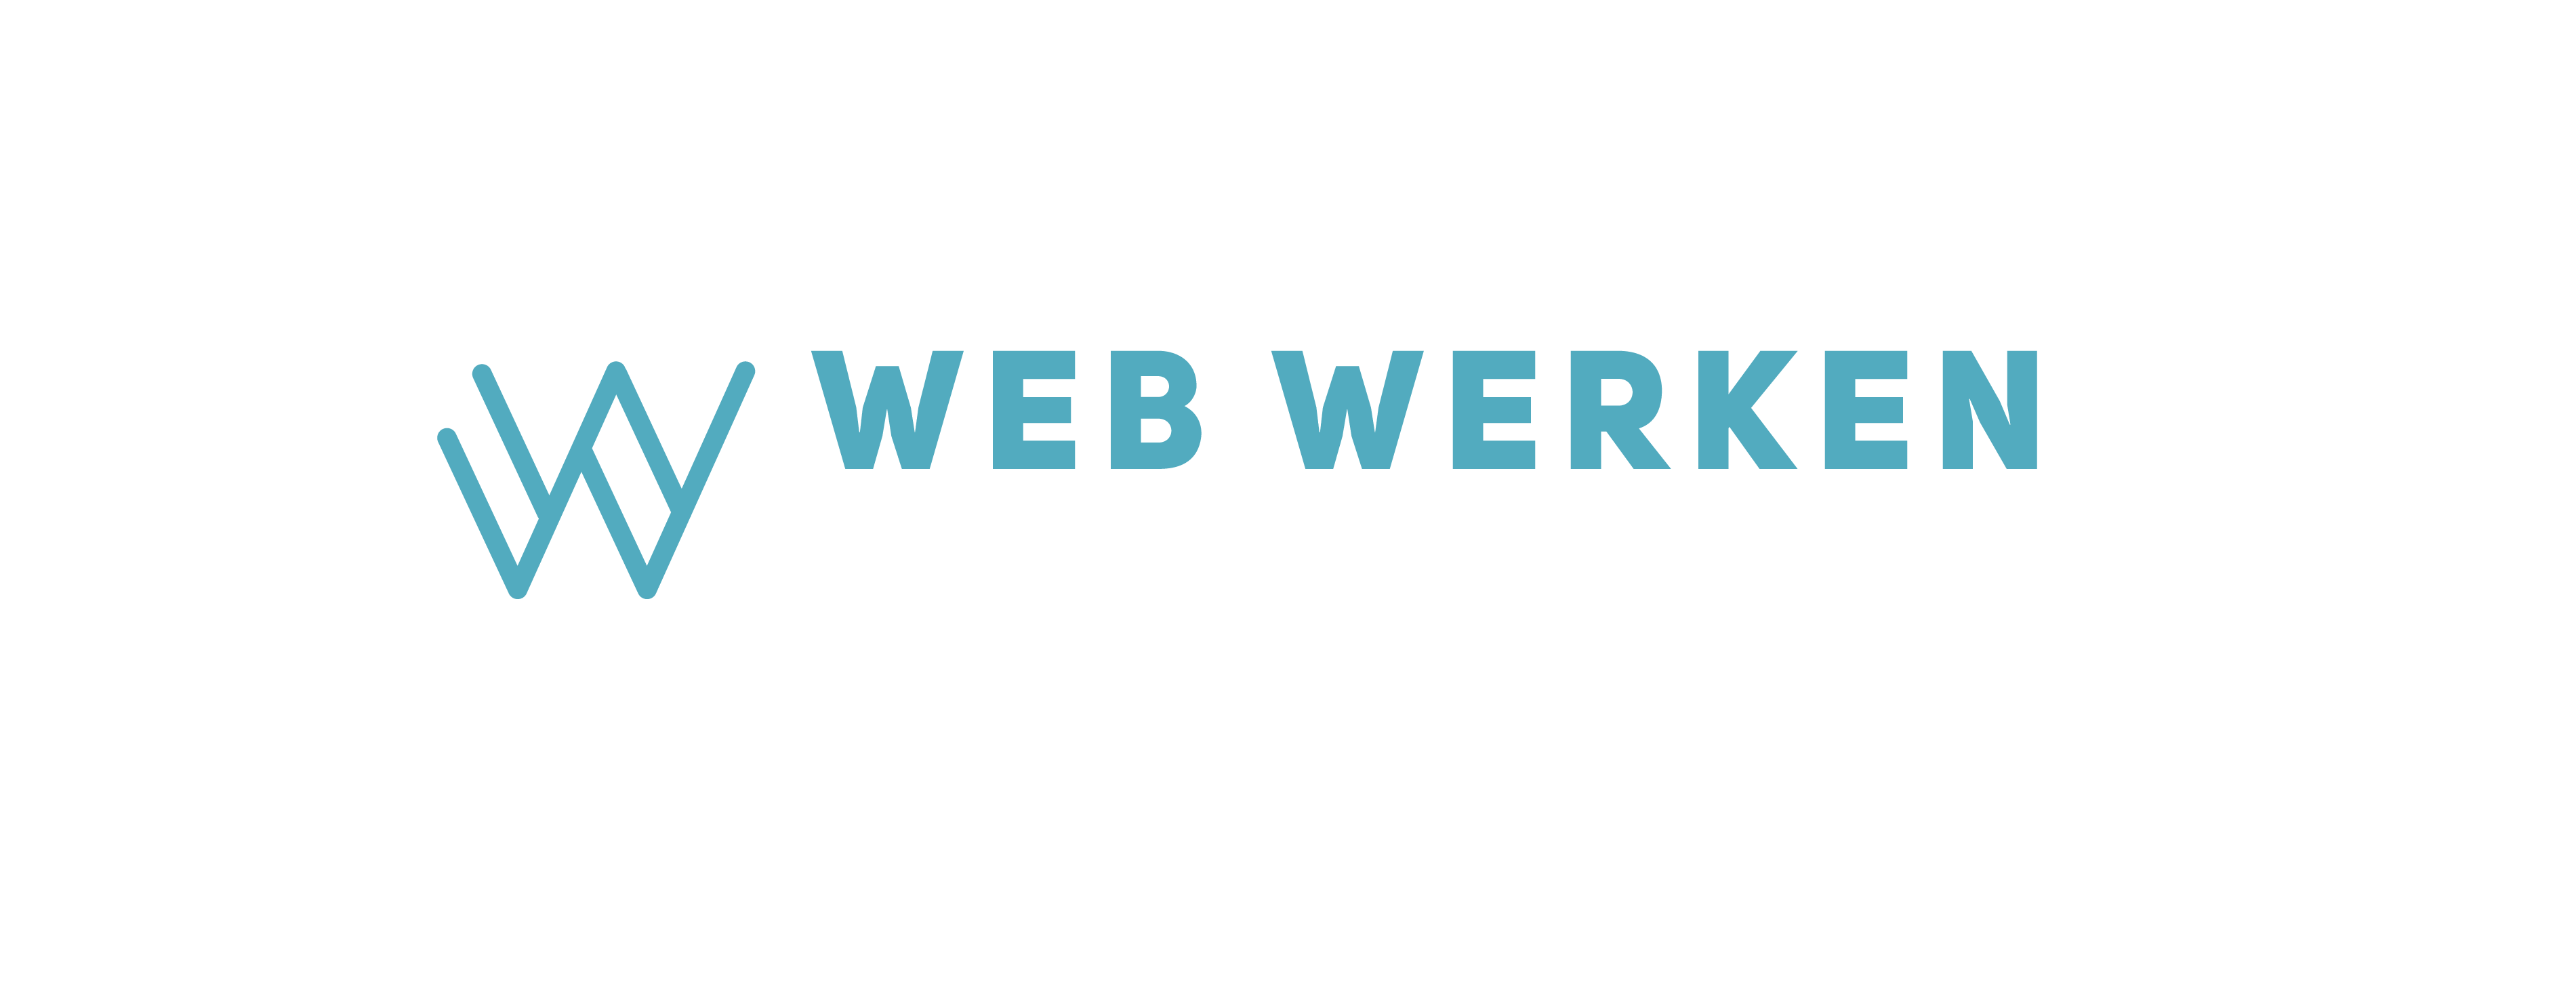 Web Werken Online Marketing